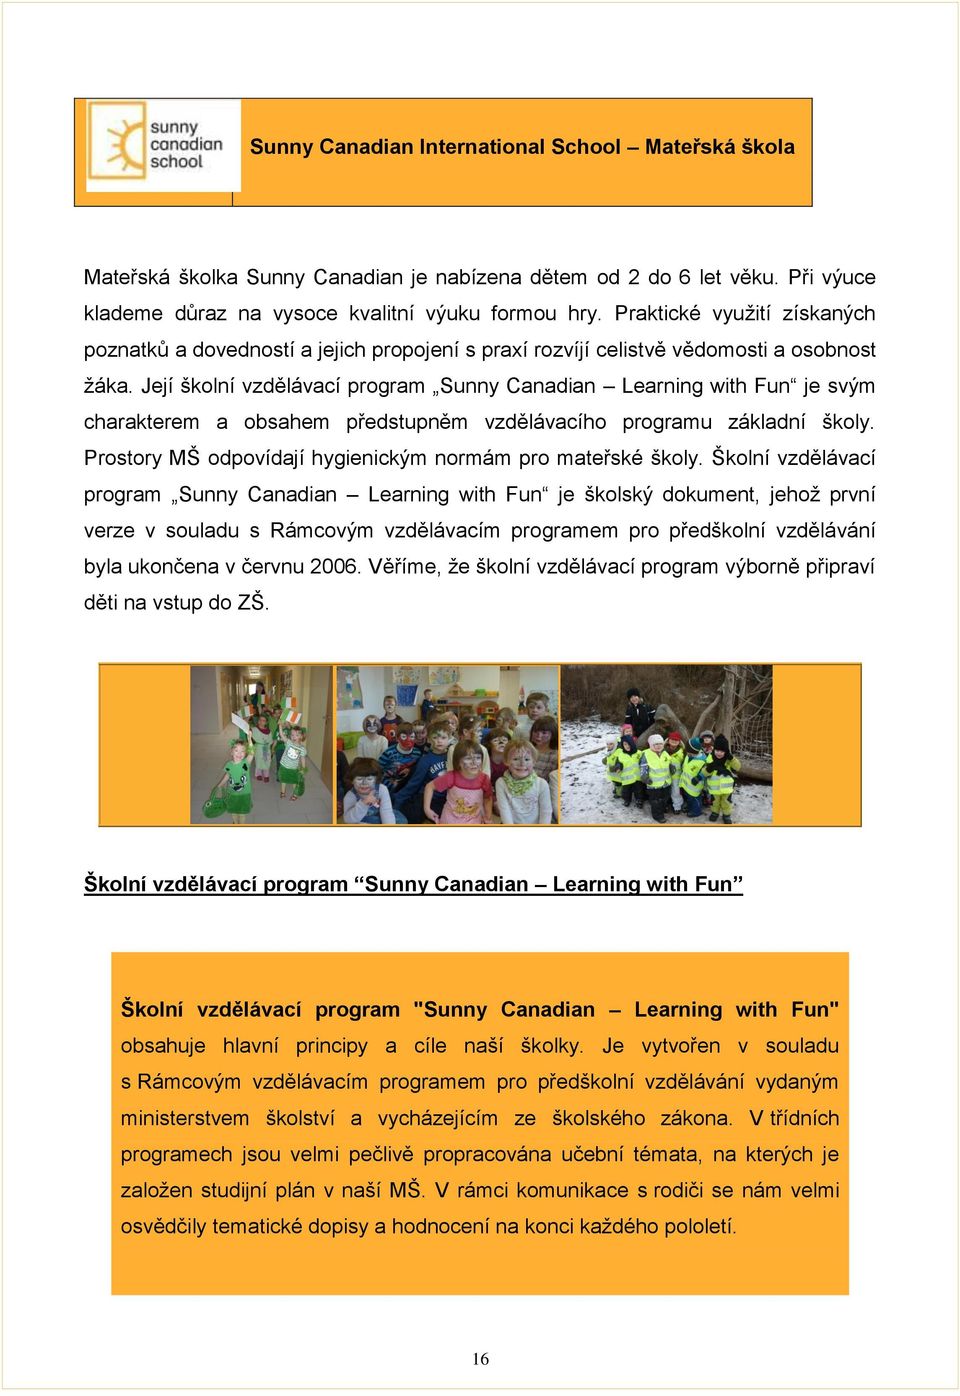 Její školní vzdělávací program Sunny Canadian Learning with Fun je svým charakterem a obsahem předstupněm vzdělávacího programu základní školy.